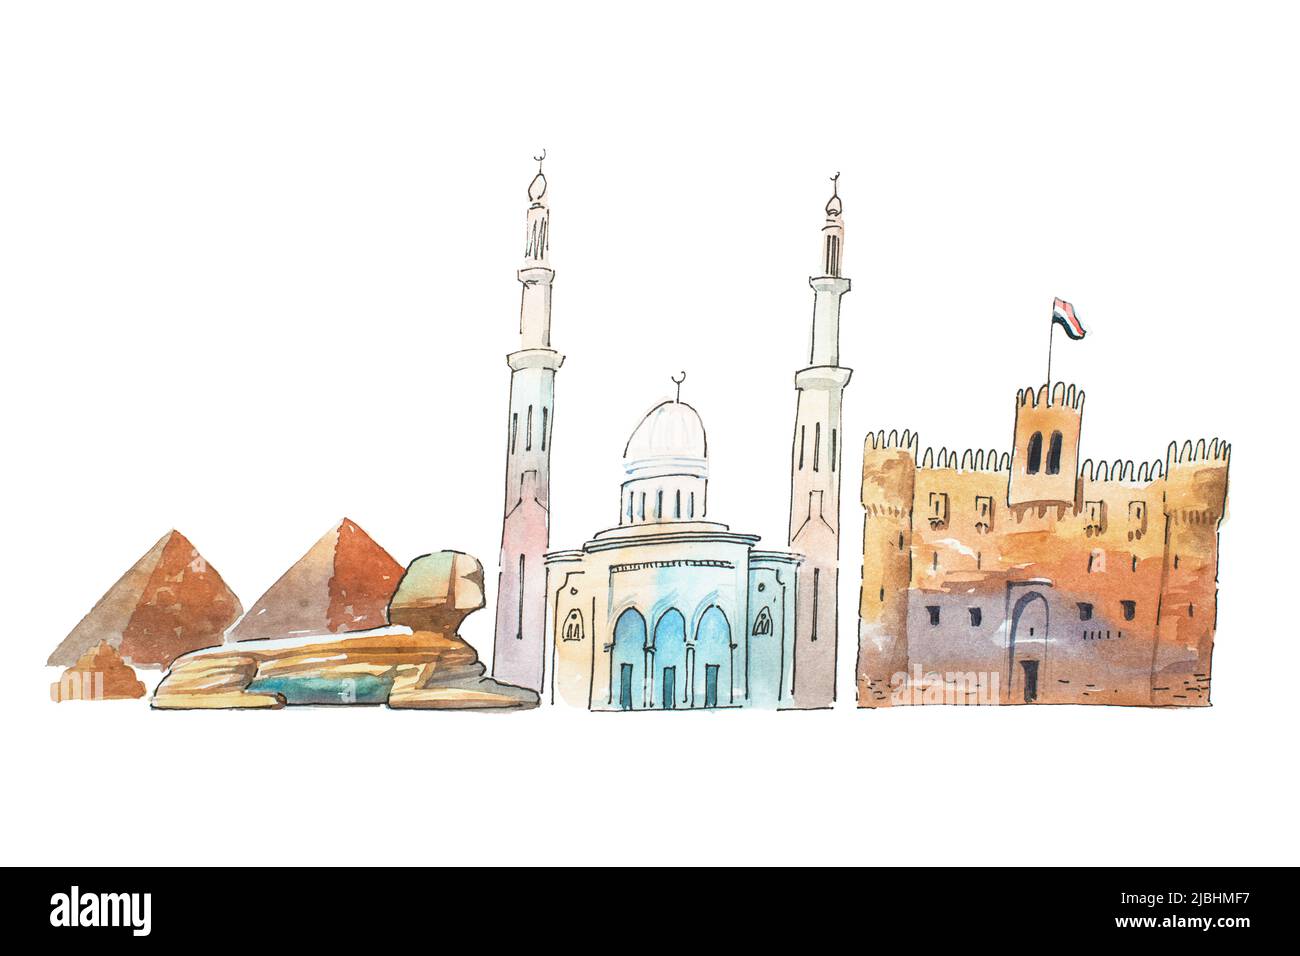 Le Caire Egypte Skyline célèbres monuments Voyage et tourisme waercolor illustration Banque D'Images